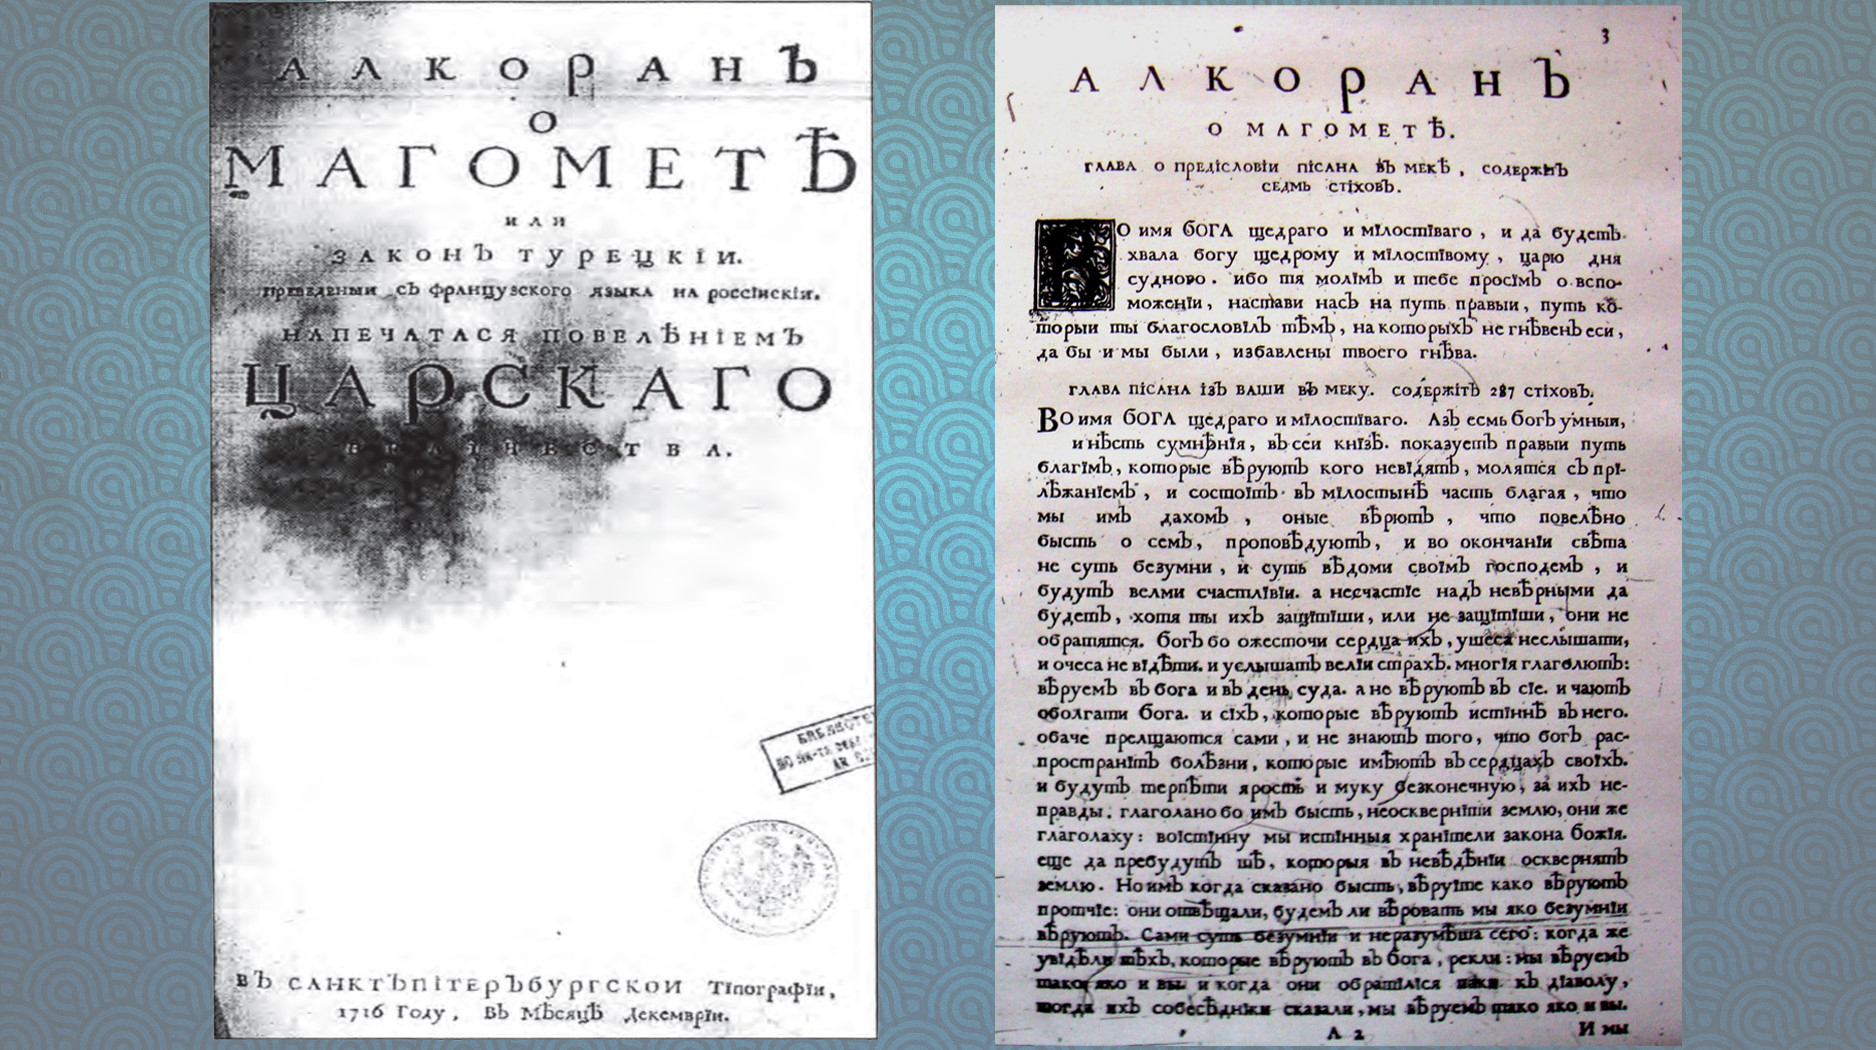 Peter Postnikov'un 'Muhammed Hakkında Kur'ân veya Türk Kanunu' çevirisinin kapağı ve ilk sayfası.